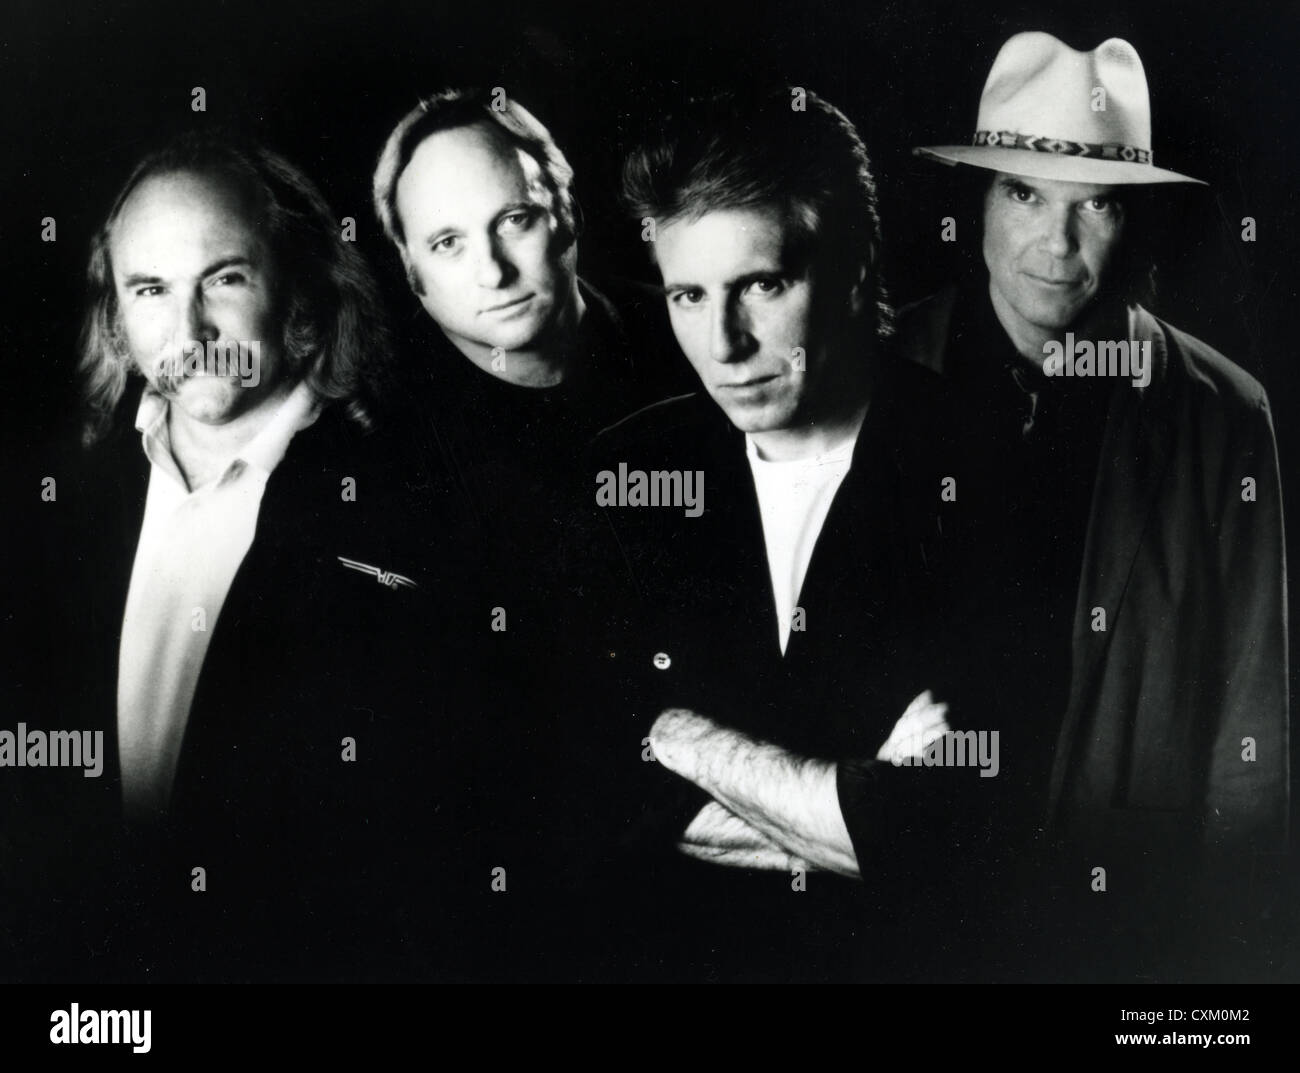 CROSBY, STILLS, NASH & YOUNG. Promofoto von Rock-Gruppe über 1995. Aus l: Dave Crosby, Stephen Stills, Graham Nash, Neil Young Stockfoto